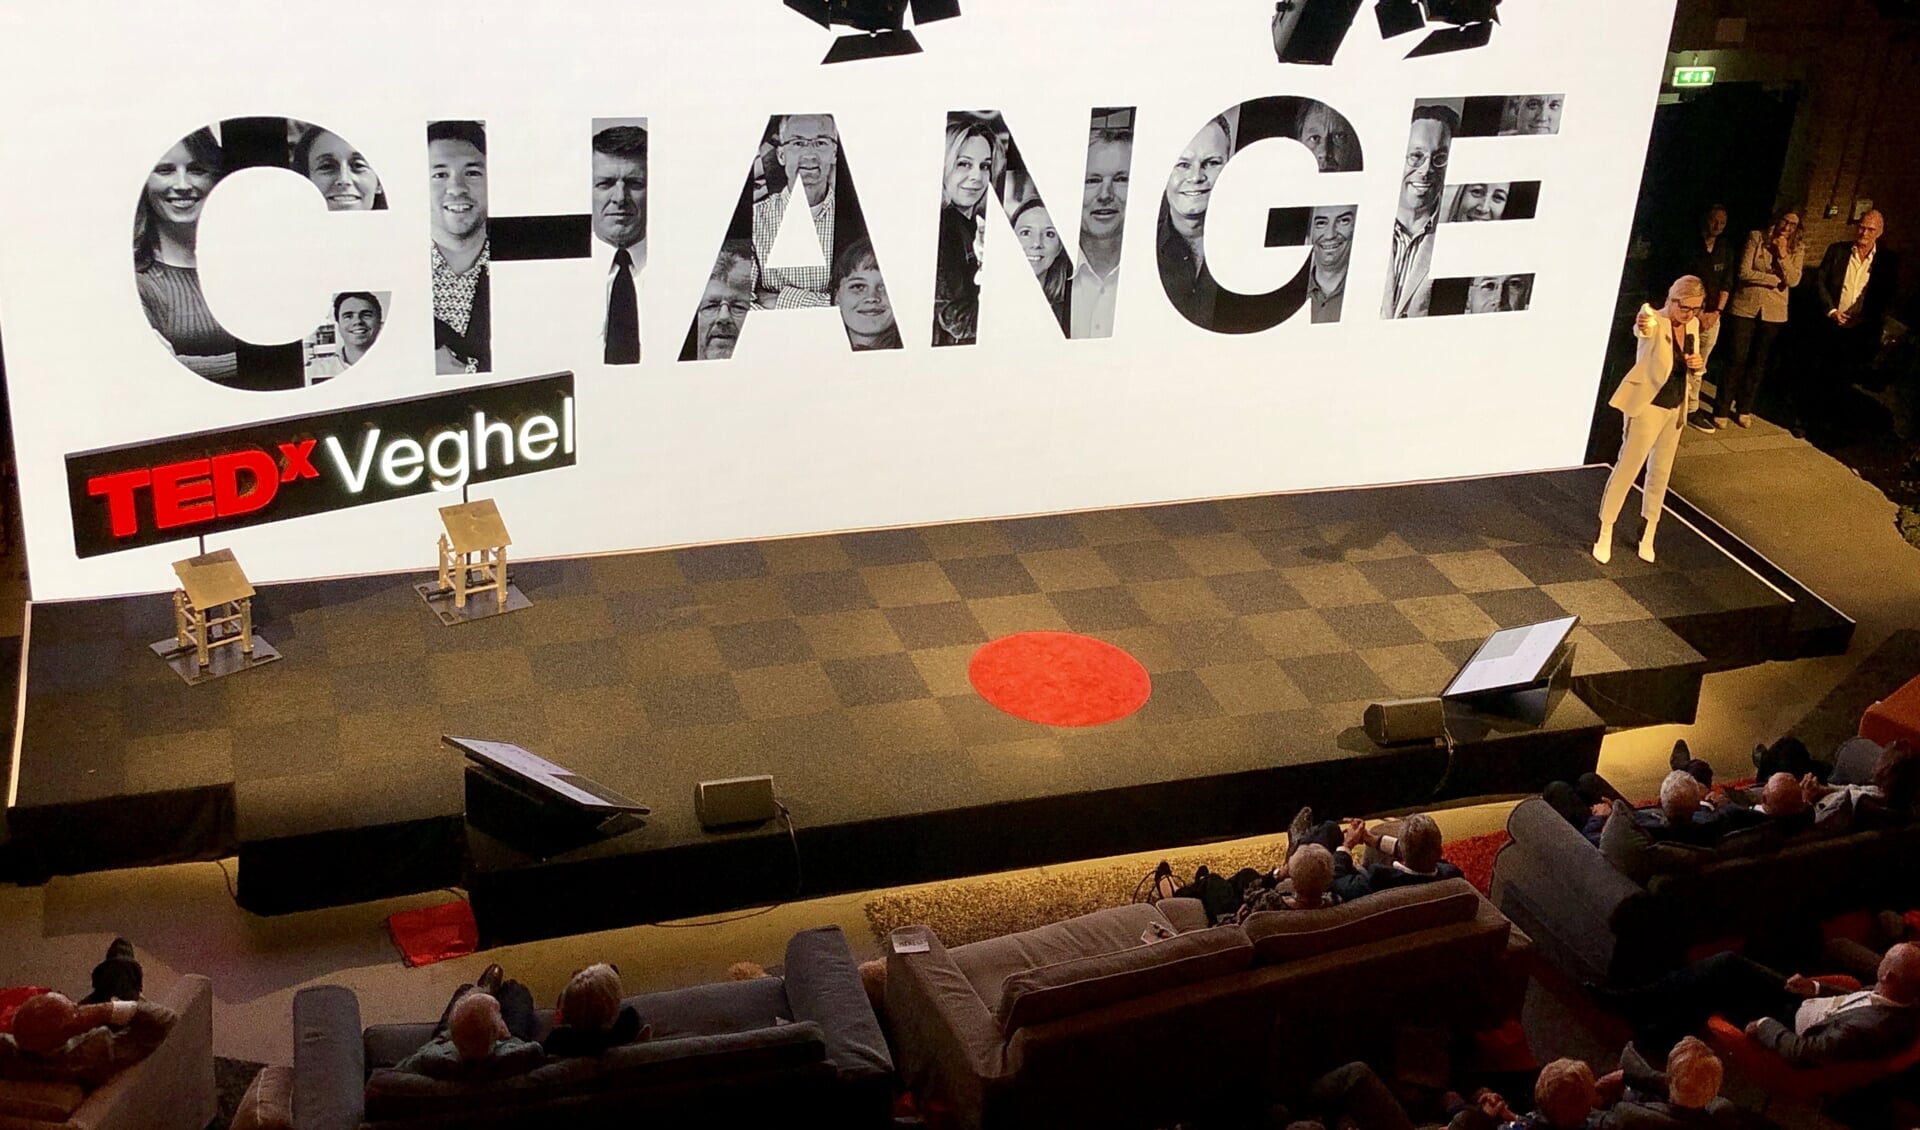 De drijvende kracht achter TEDxVeghel sloot het evenement vrijdag in stijl af.